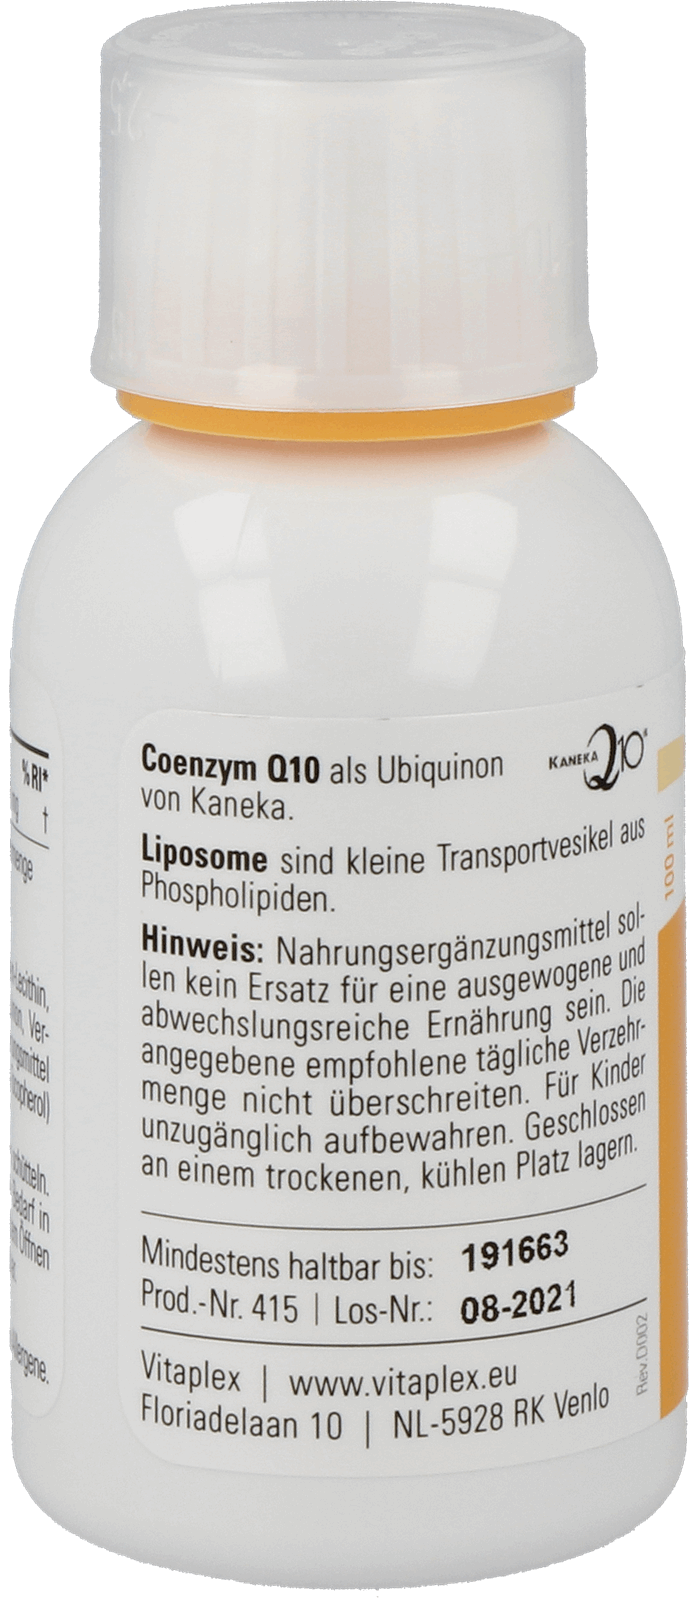 Coenzym Q10 liposomal 